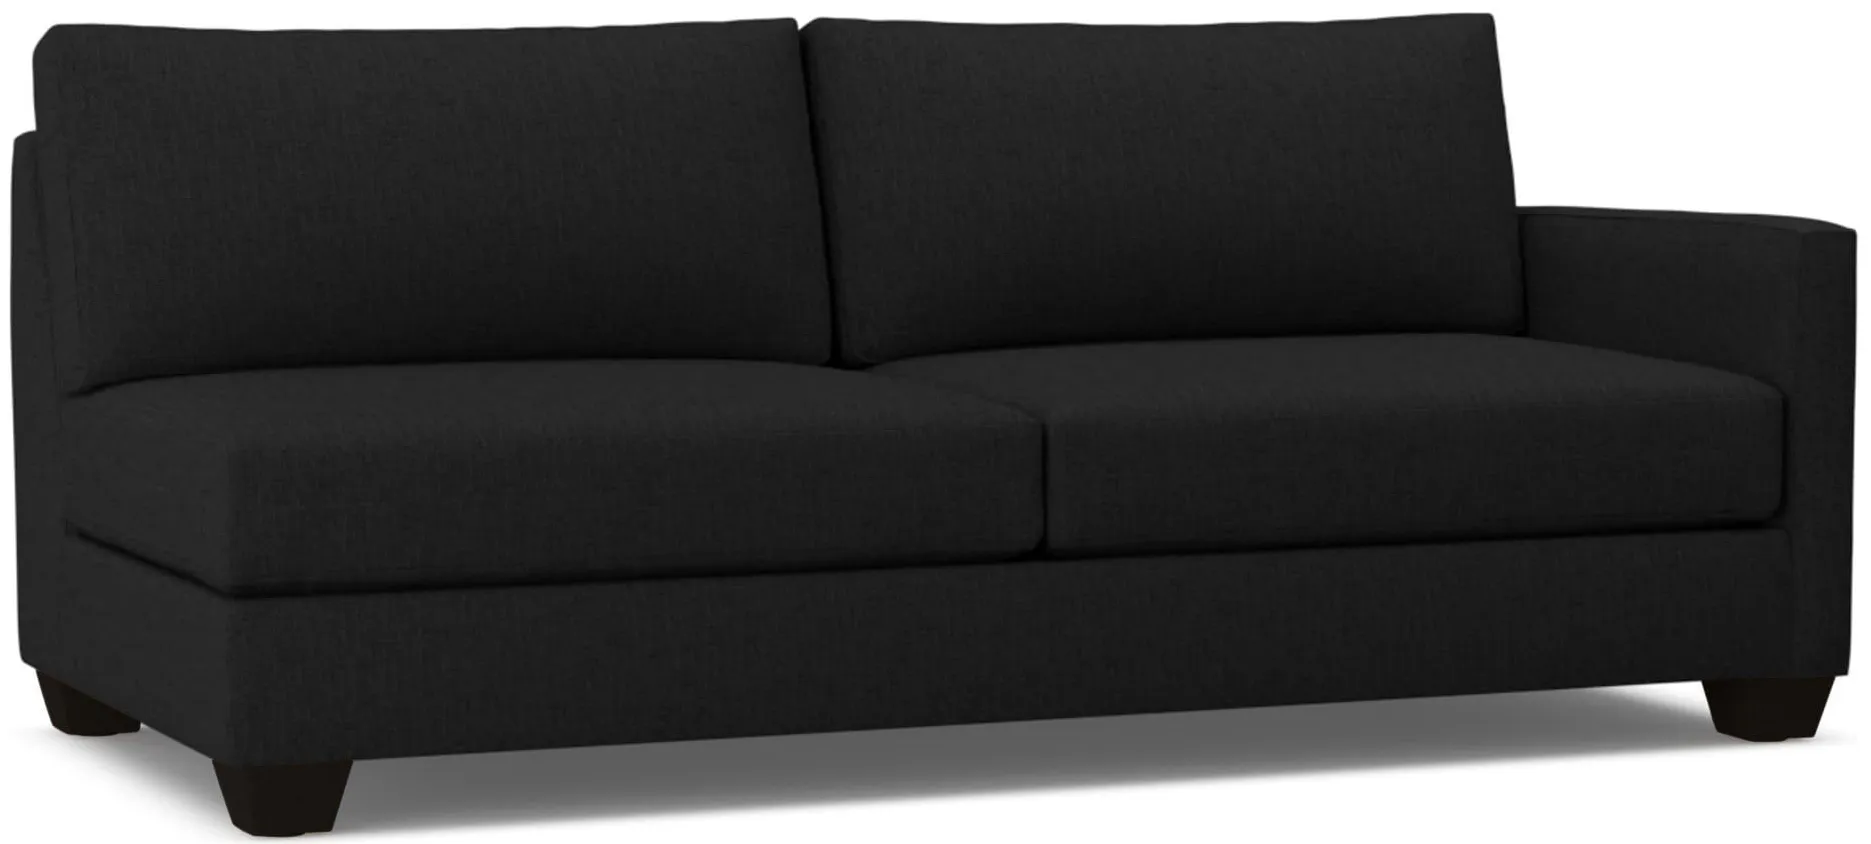 Tuxedo Right Arm Sofa